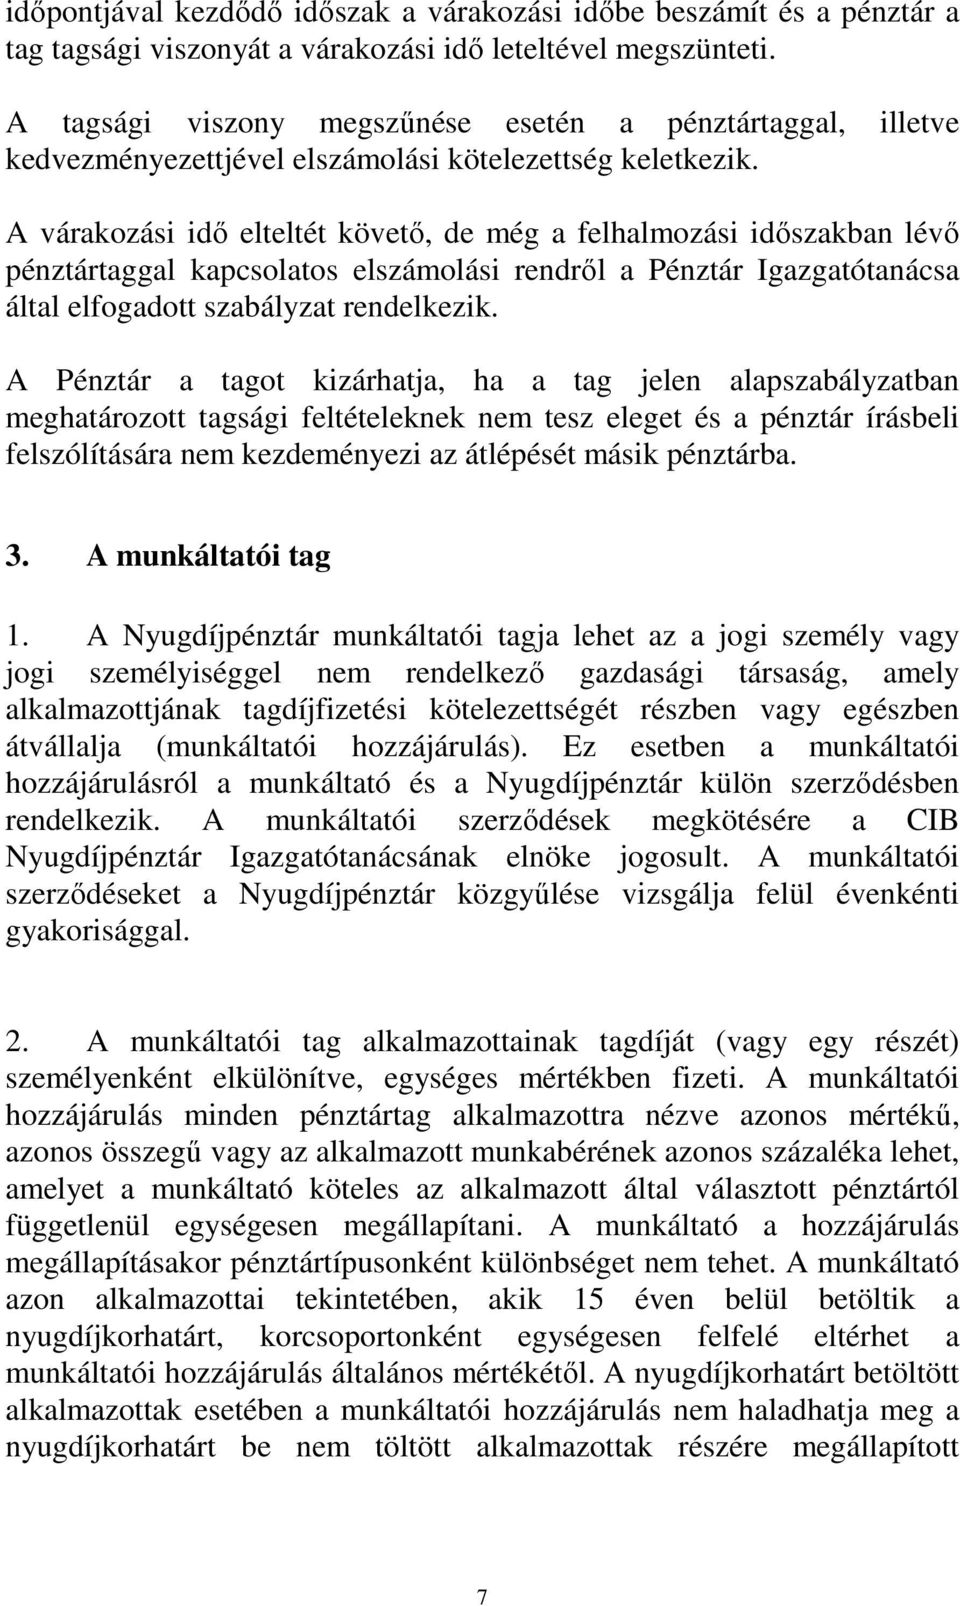 A várakozási idı elteltét követı, de még a felhalmozási idıszakban lévı pénztártaggal kapcsolatos elszámolási rendrıl a Pénztár Igazgatótanácsa által elfogadott szabályzat rendelkezik.